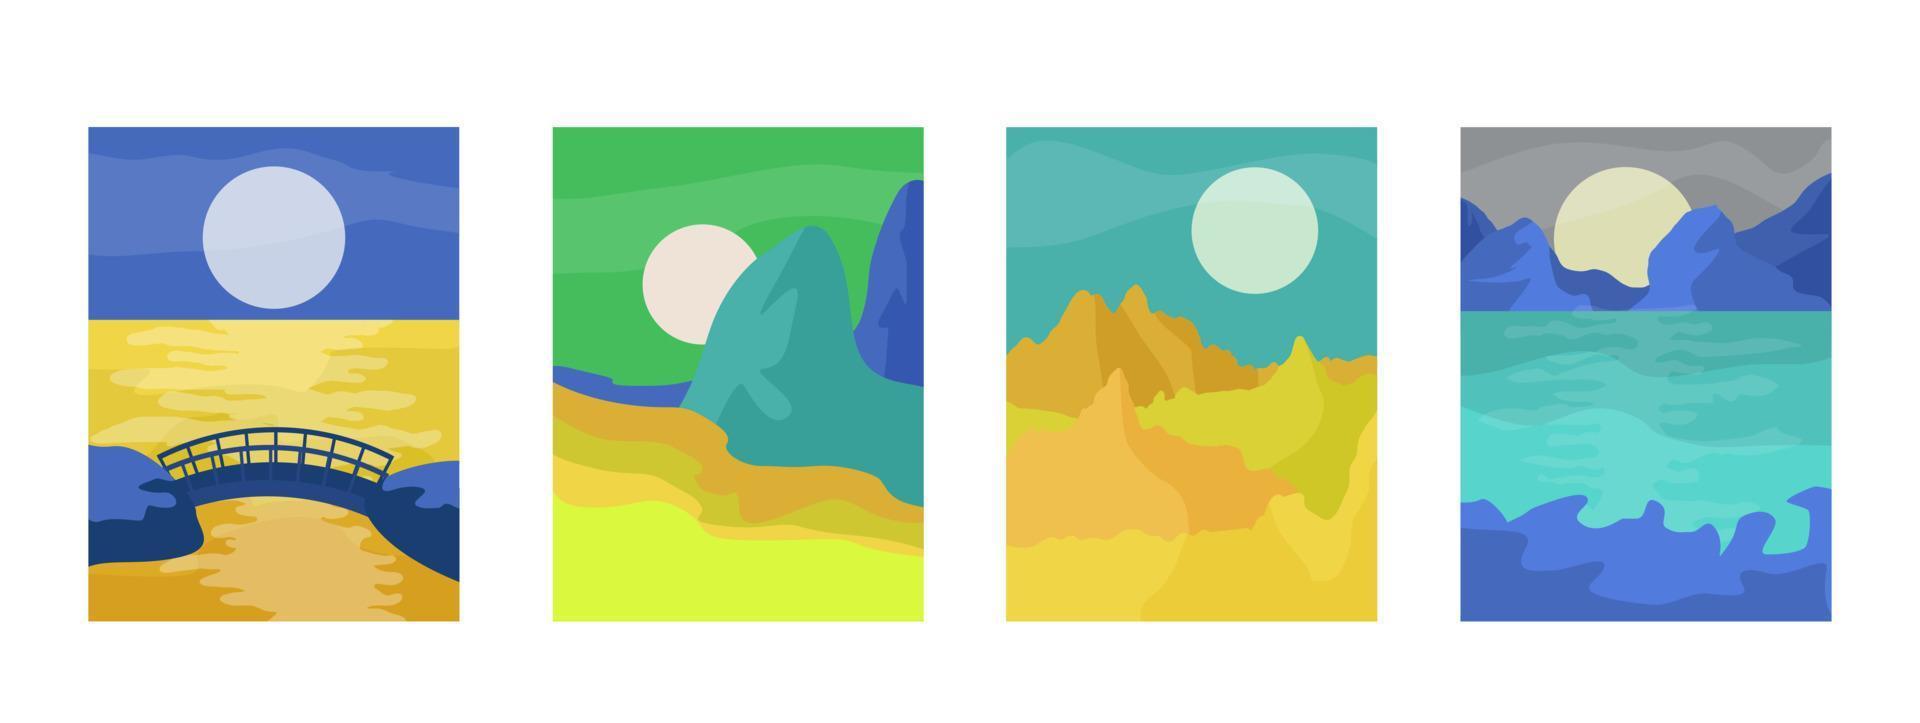 paisagens minimalistas abstratas com sol, lua, mar, montanhas. decoração de parede boho. ilustração em vetor abstrato plana.